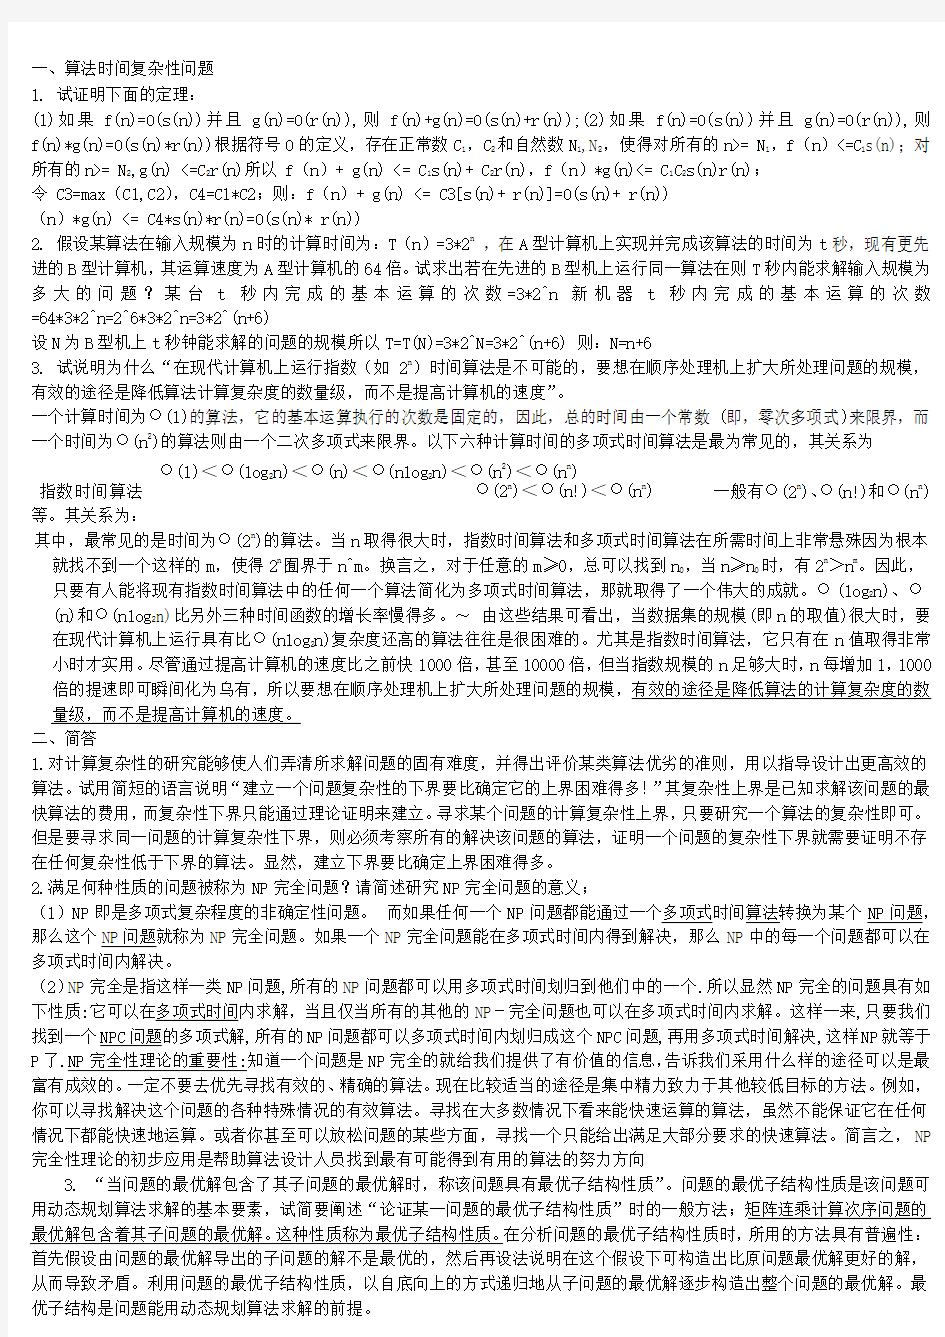 北京工业大学算法设计与分析2014年题库